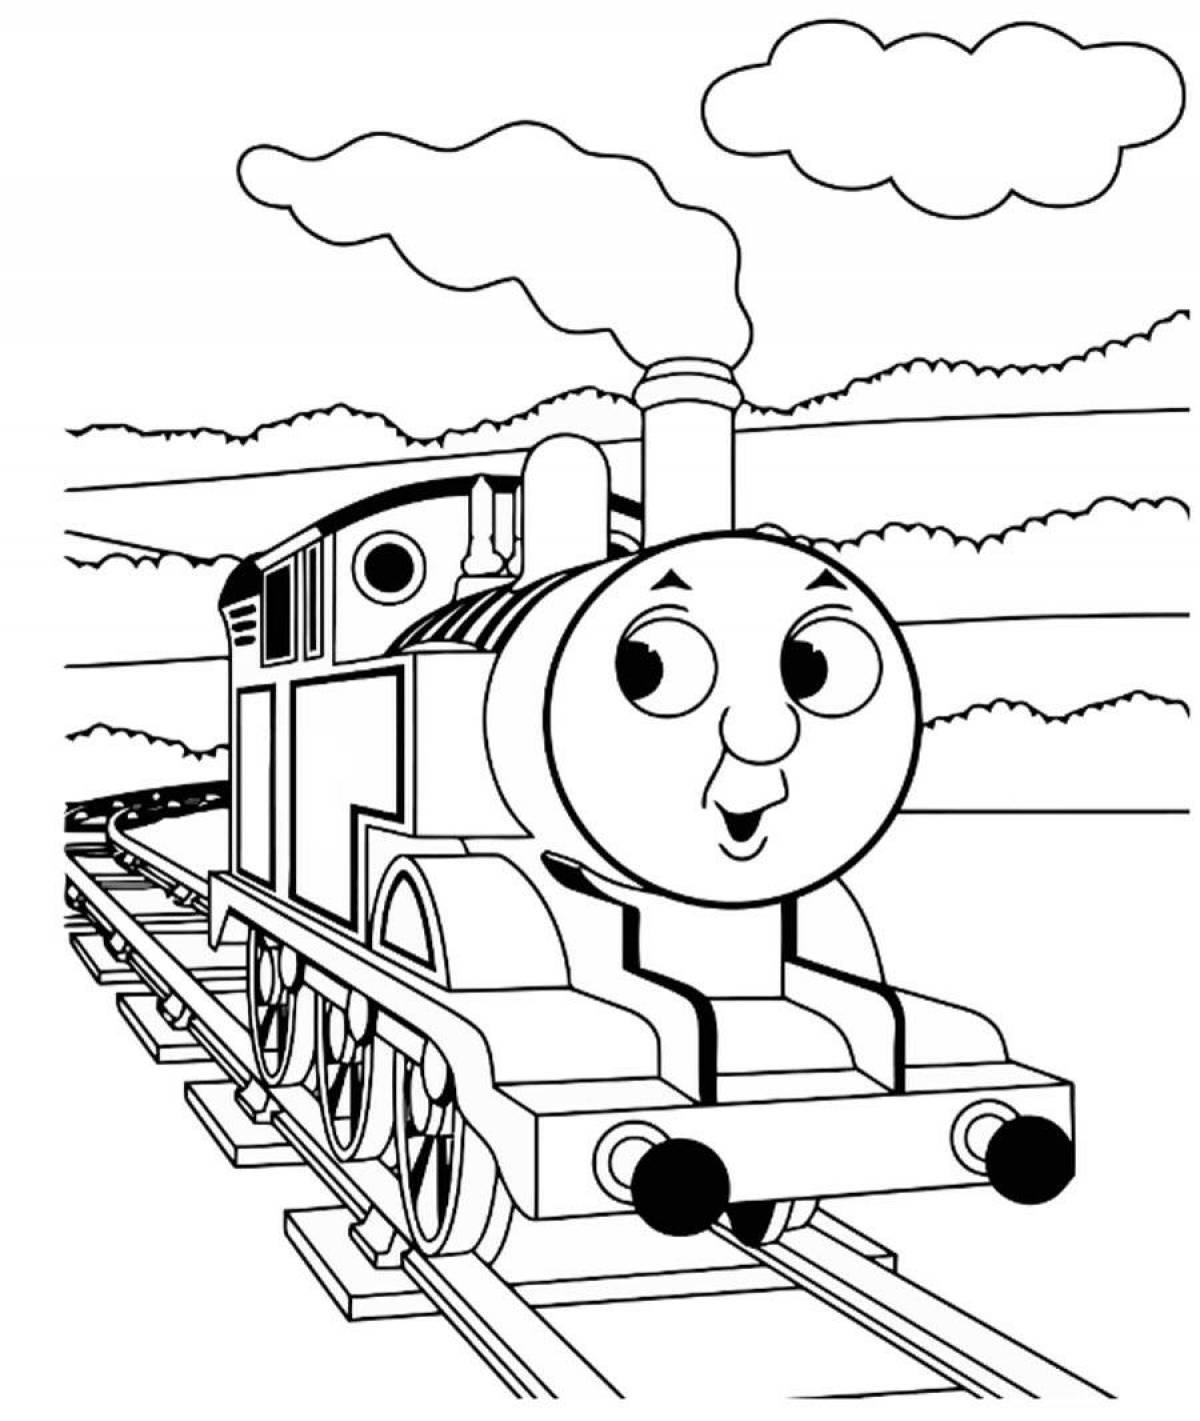 Thomas' fun coloring book